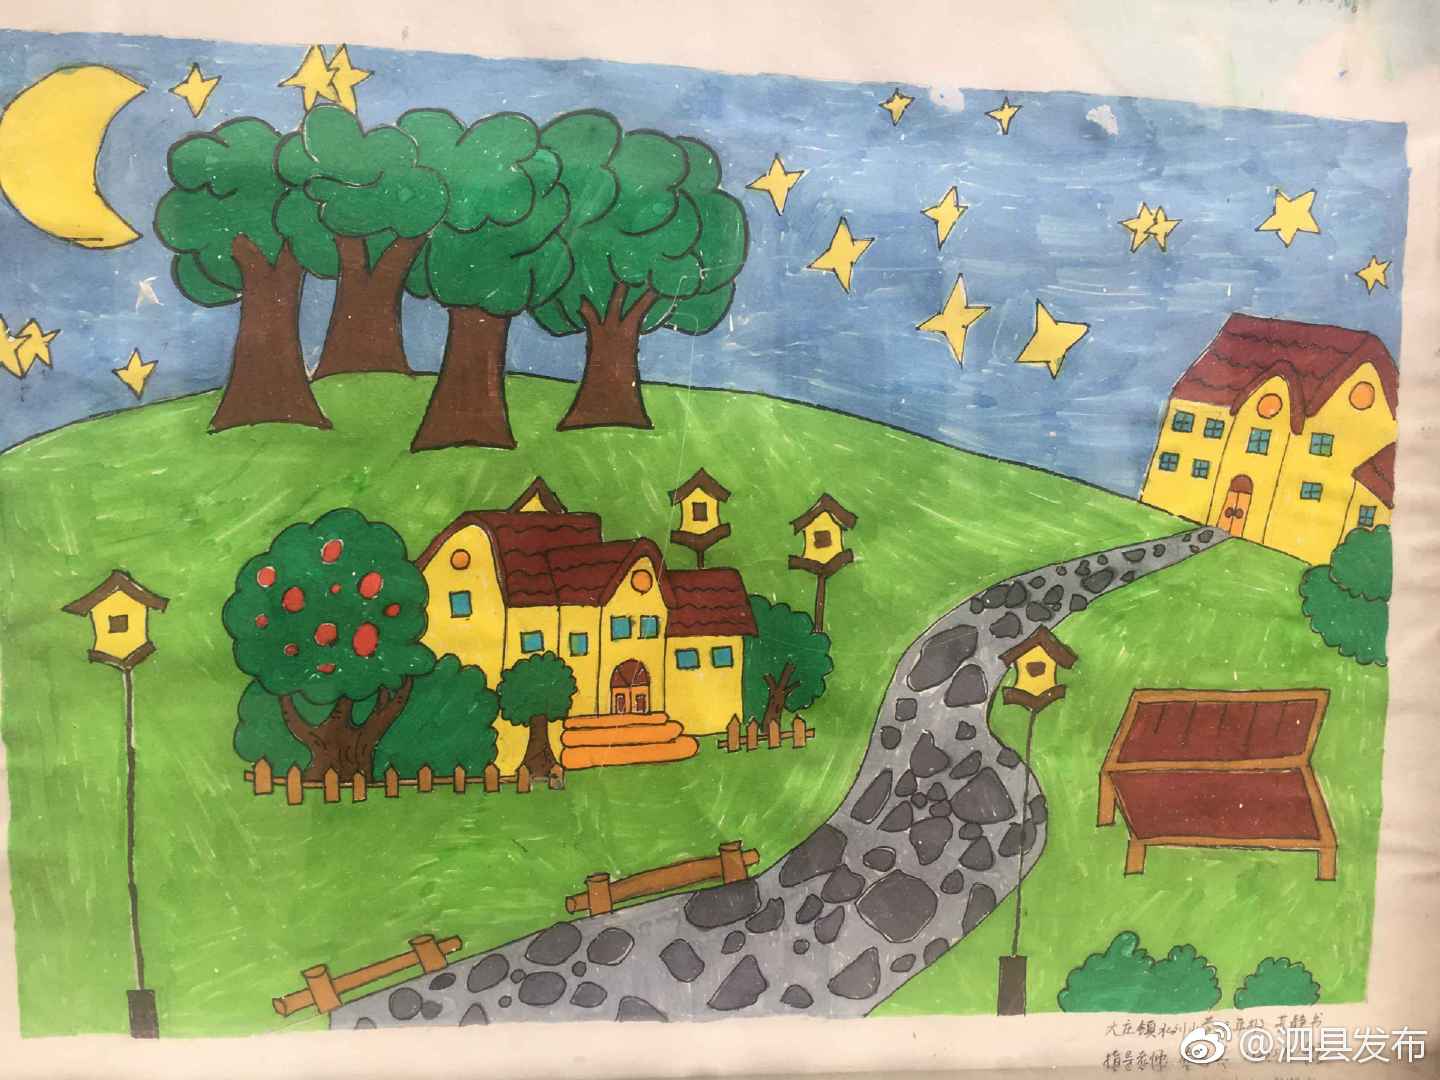 大庄中心校举行"脱贫攻坚童眼看,我画家乡新变化"小学生绘画比赛